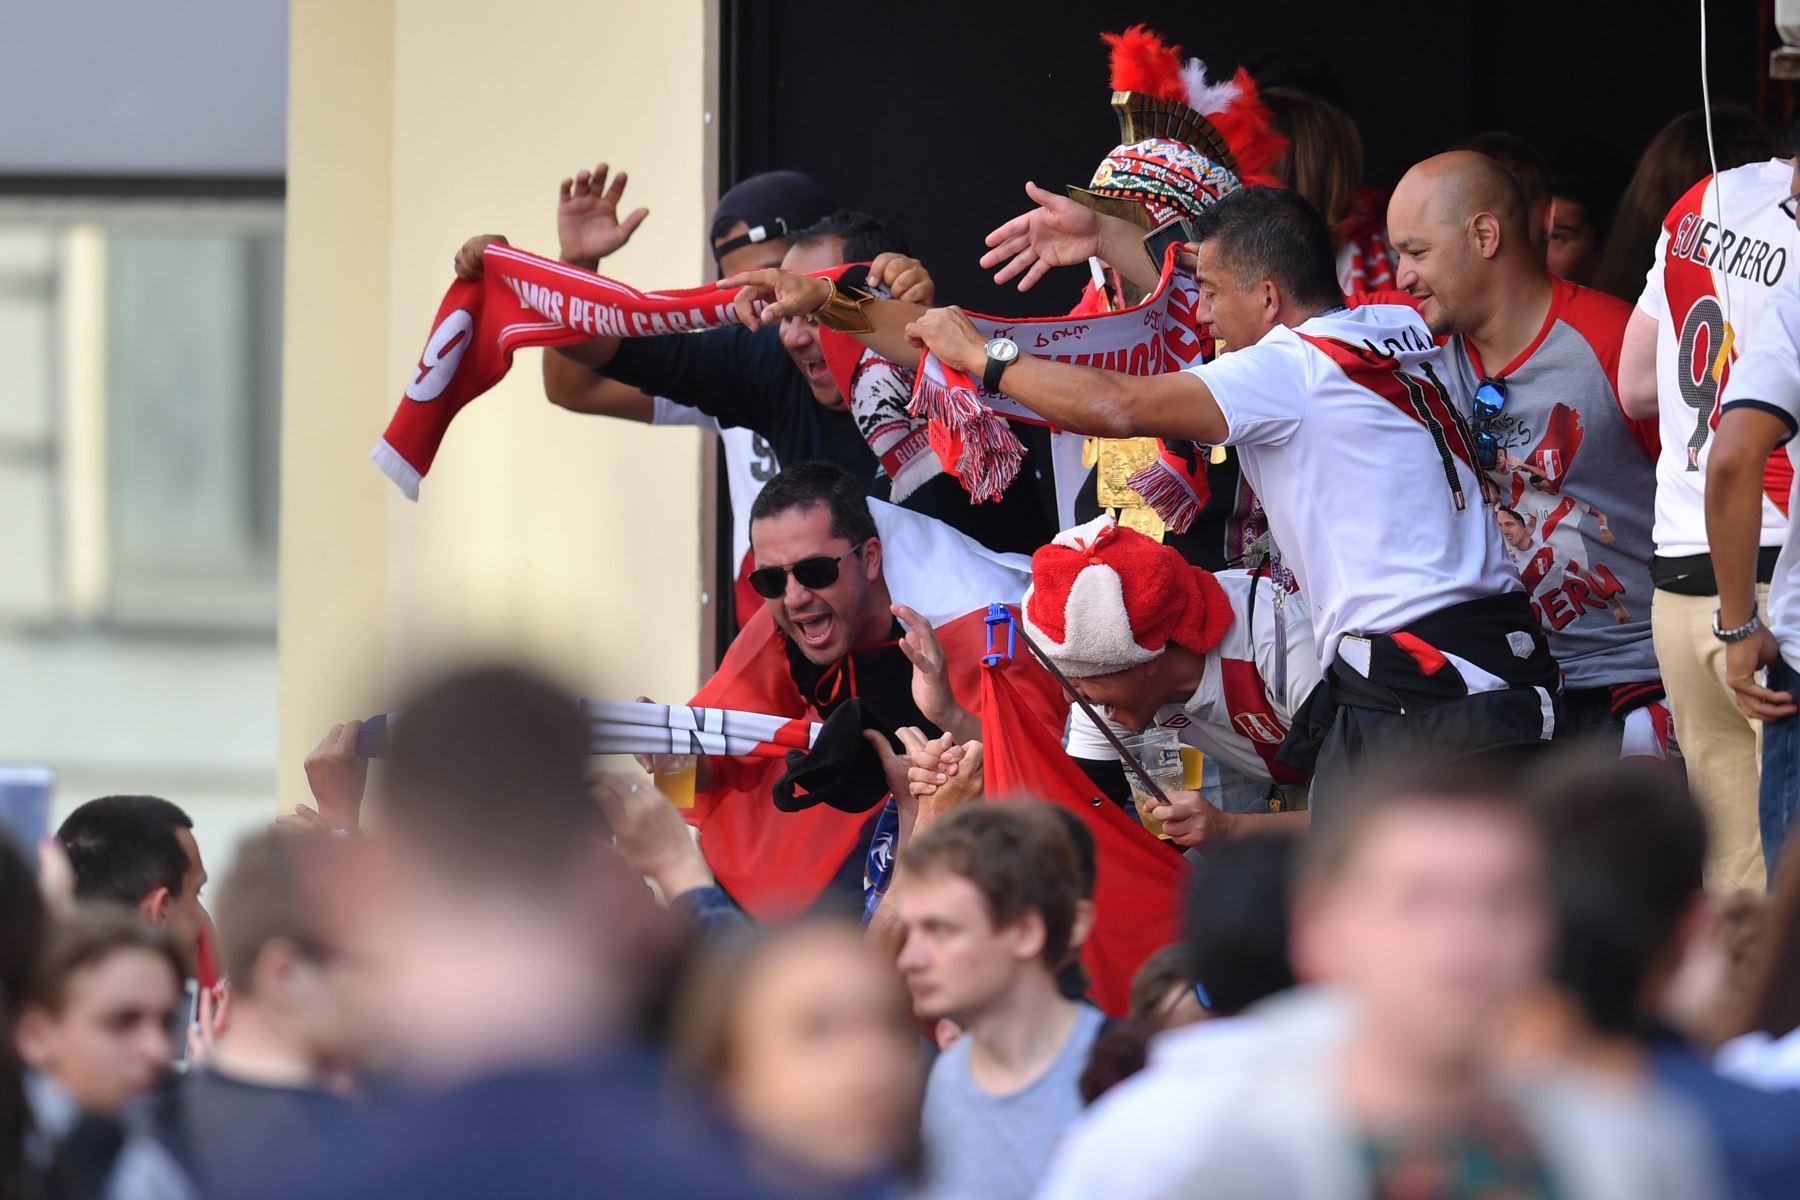 Los fanáticos peruanos aplauden en un bar de deportes en Ekaterinburg, el 20 de junio de 2018 en la víspera del partido entre Francia y Perú como parte del torneo de fútbol de la Copa Mundial Rusia 2018. / AFP